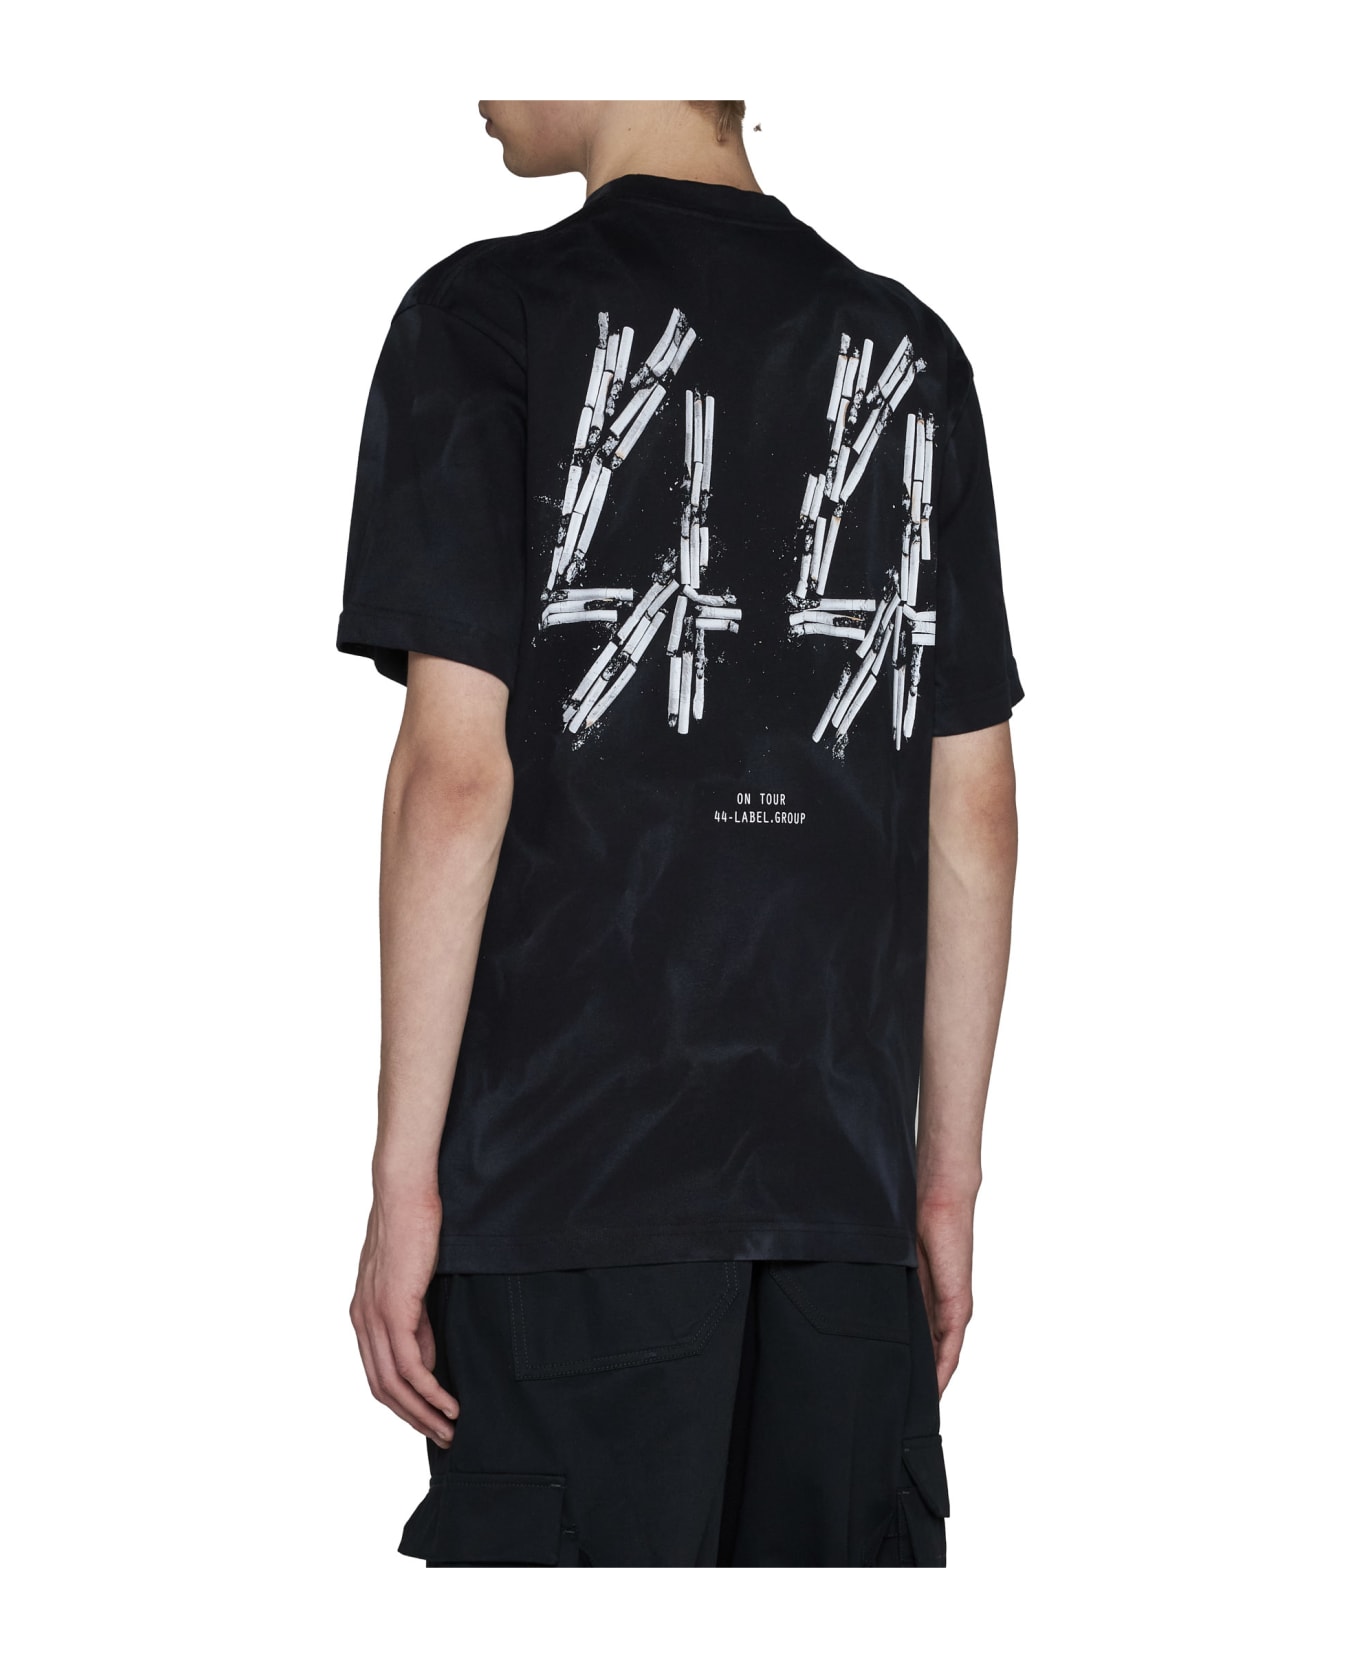 44 Label Group T-Shirt - Black+smoke effect+44 smoke シャツ